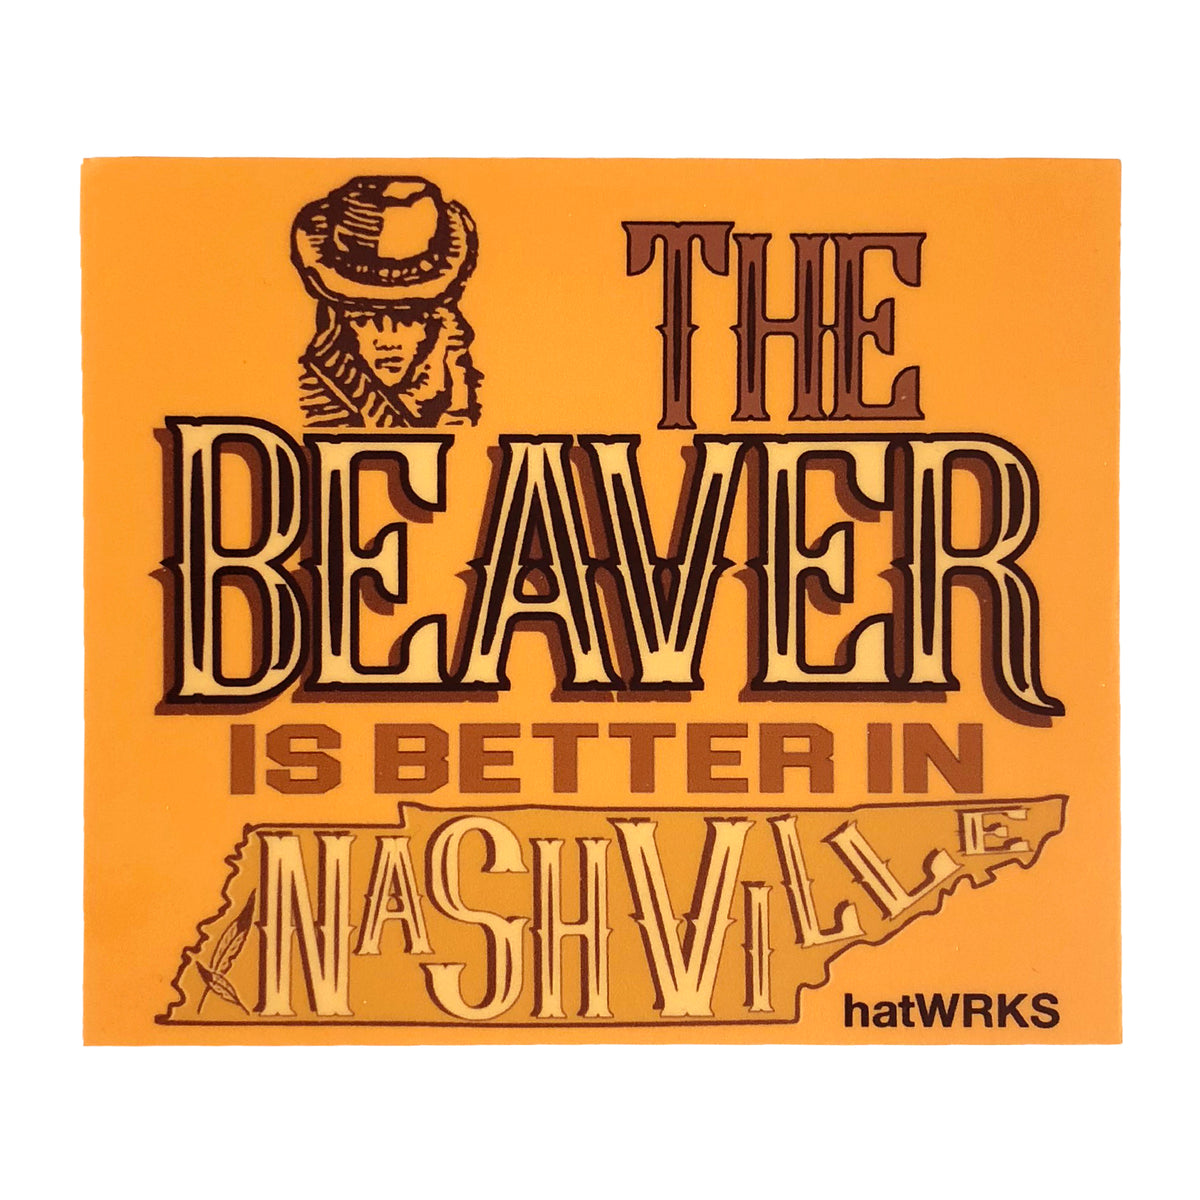 hatWRKS sticker ~ "beaver is better"